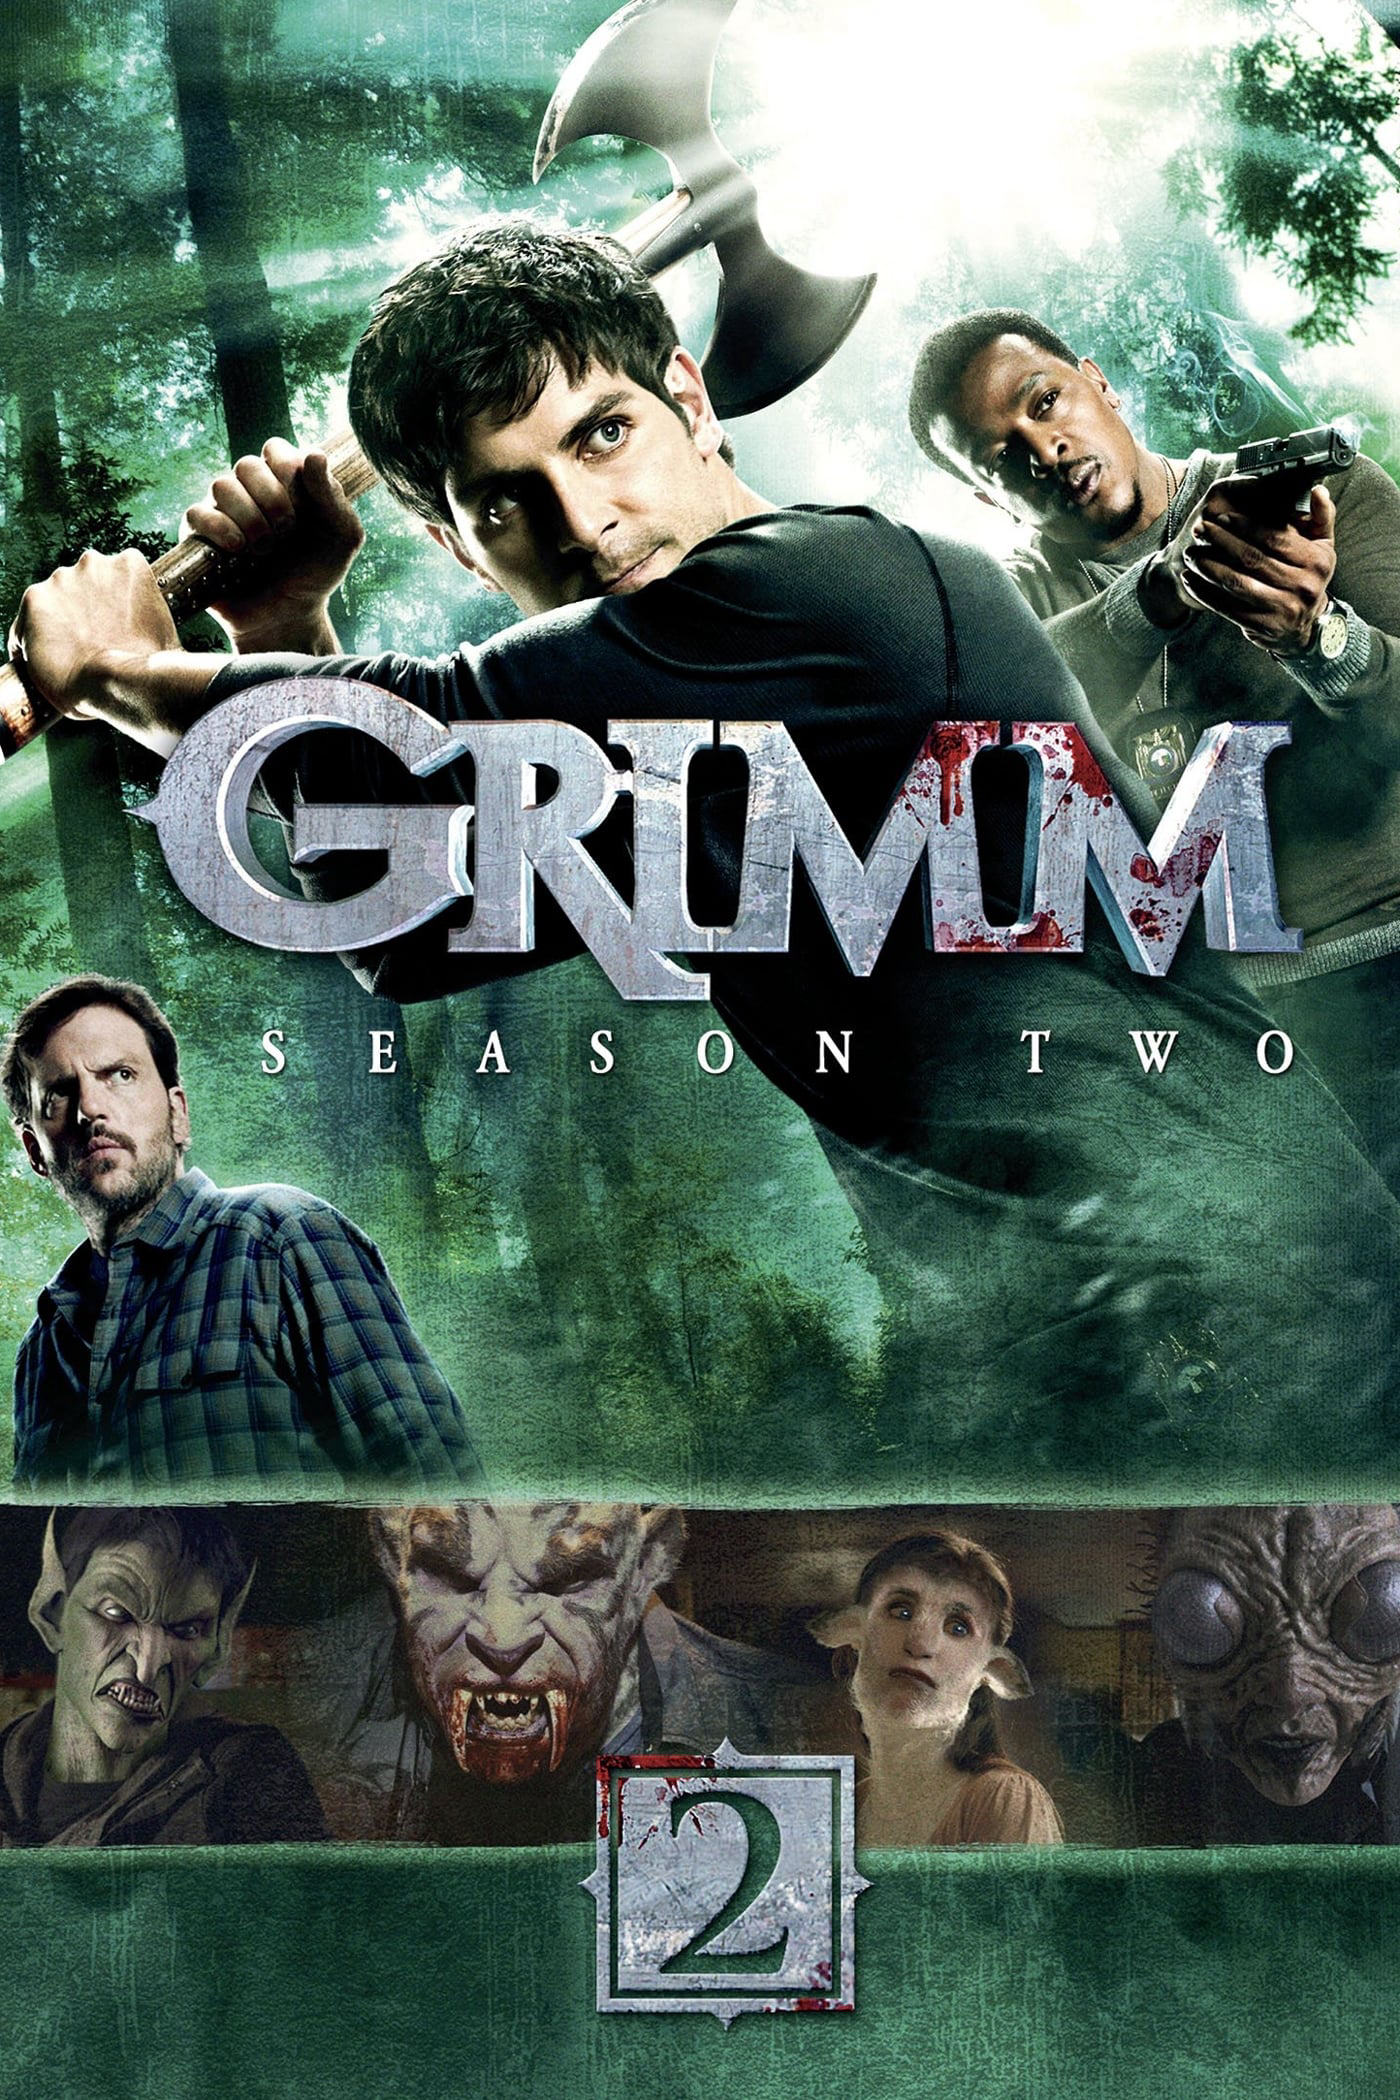 Xem Phim Anh Em Nhà Grimm (Phần 2) (Grimm (Season 2))